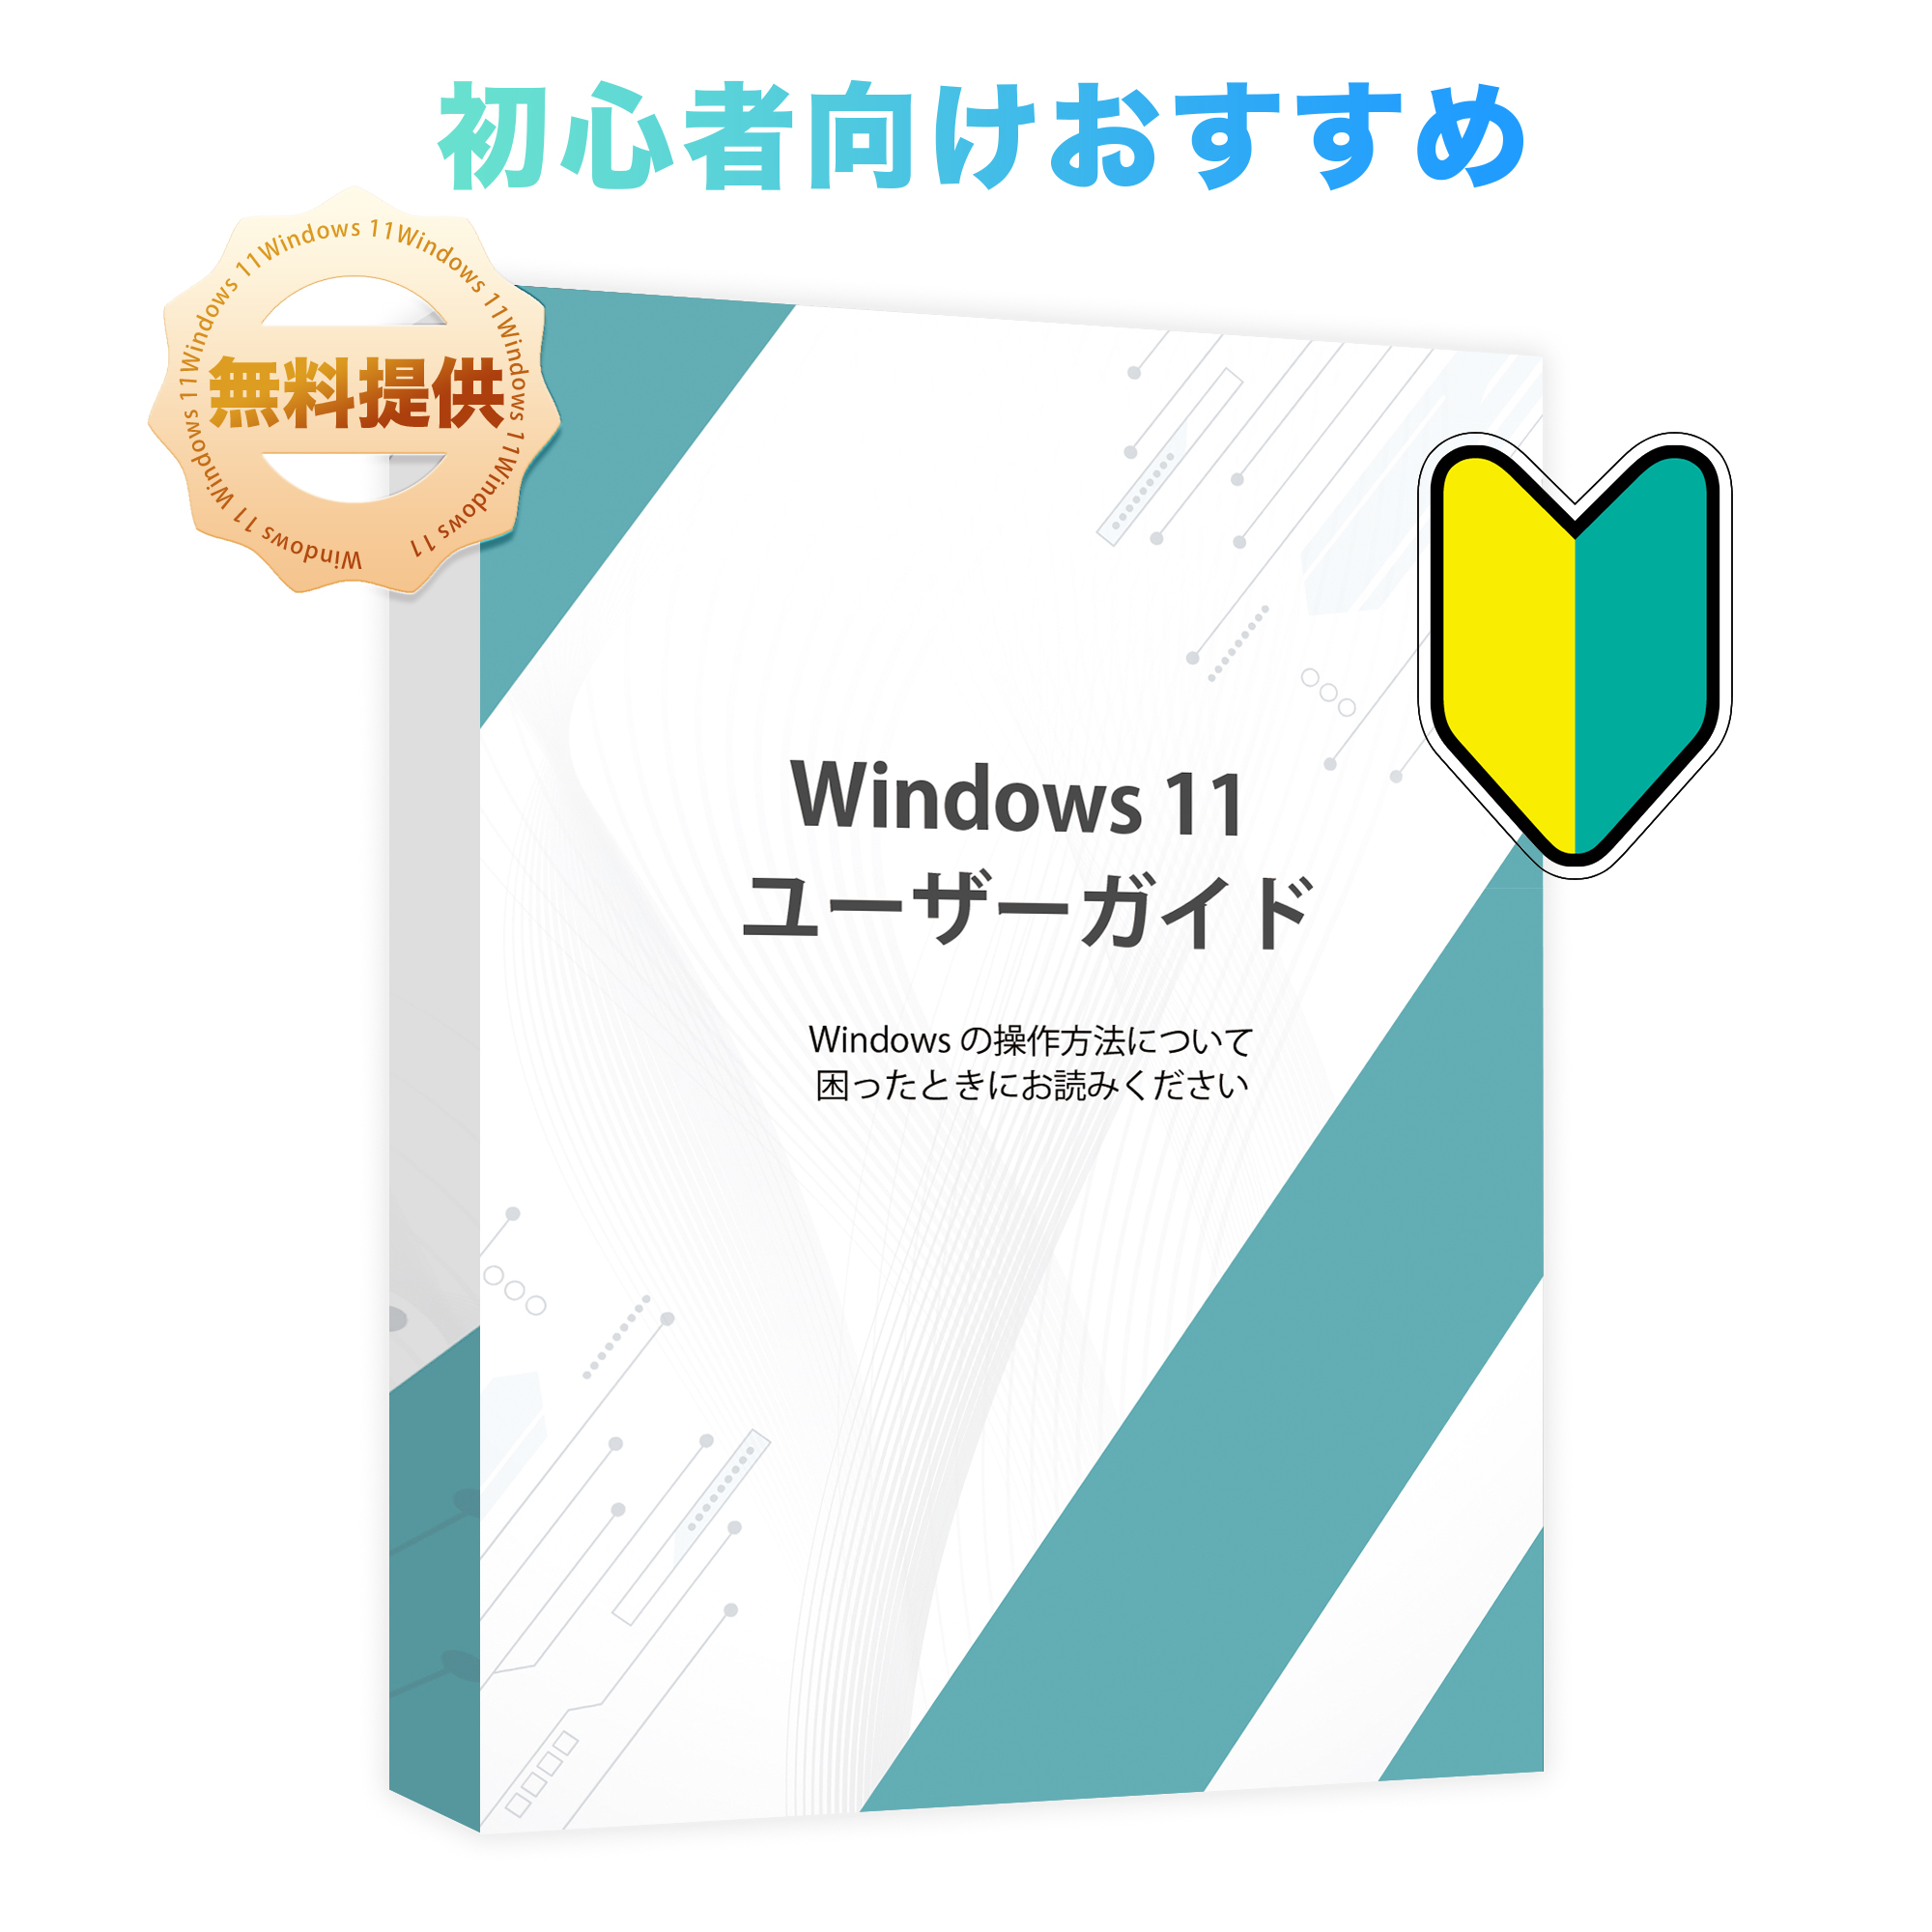 ノートパソコン新品 薄型ノートPC office付き Win11搭載 14インチ Celeron N3350 メモリ6GB SSD64GB 日本語キーボード 軽量薄型パソコン